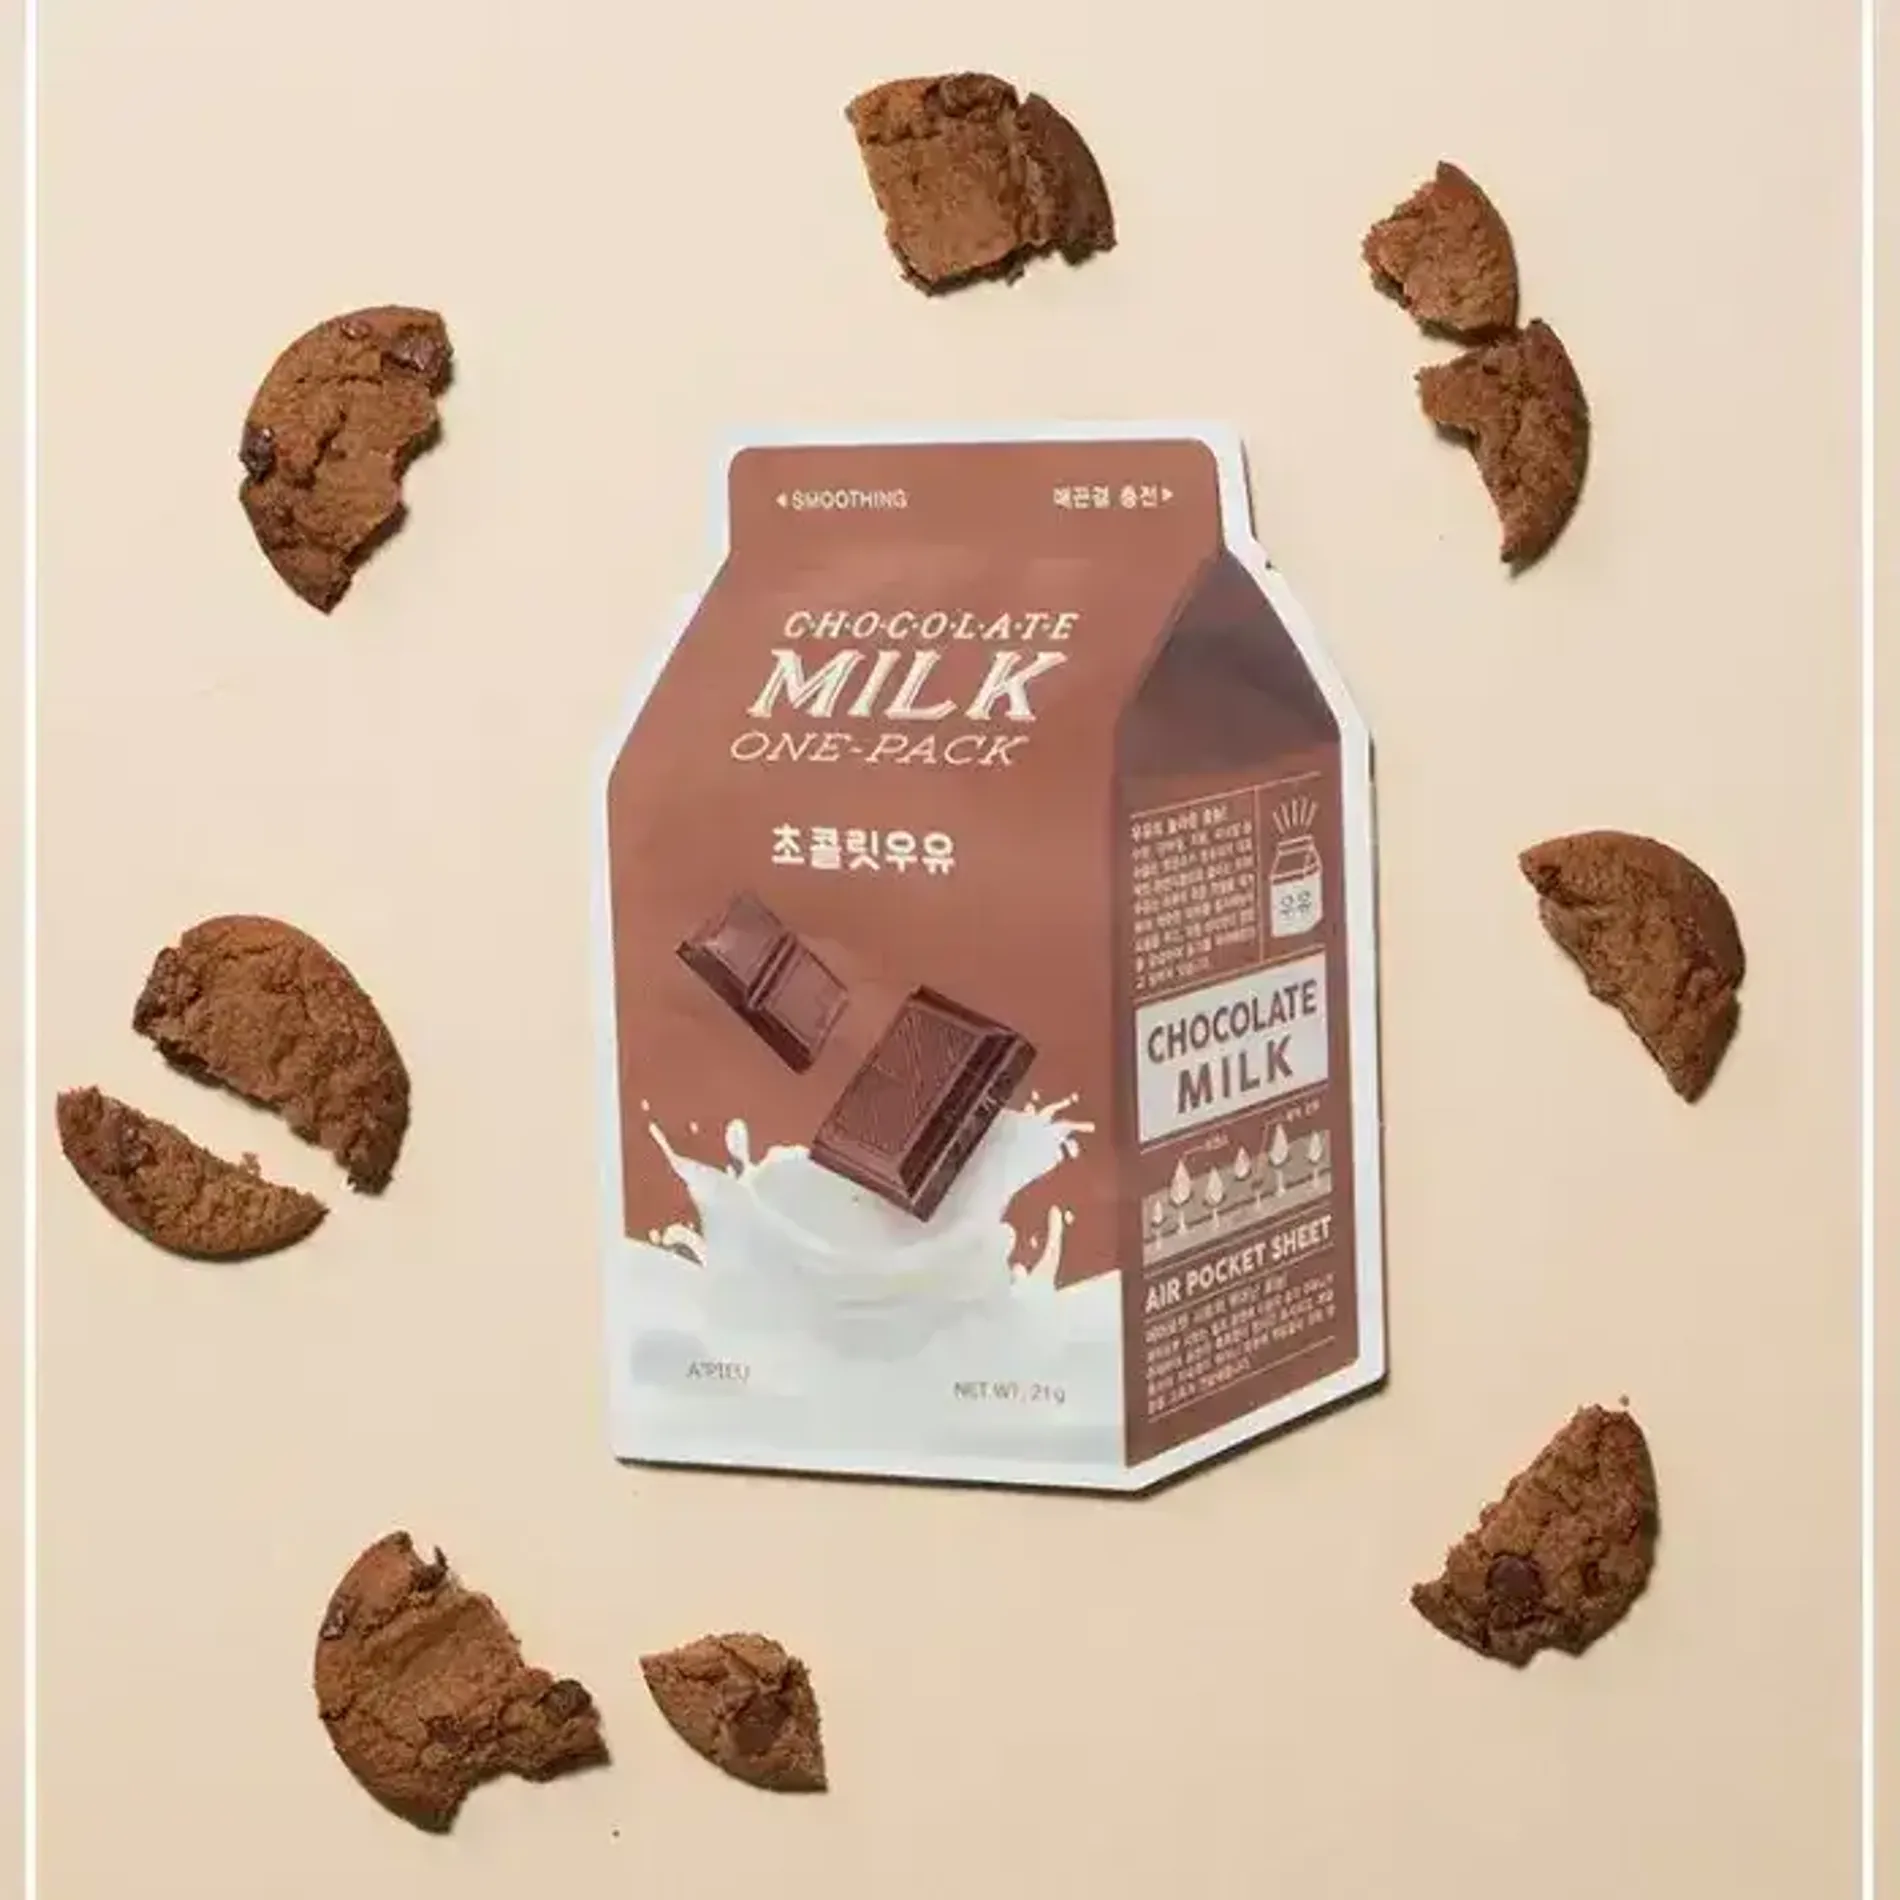 mat-na-cham-soc-da-a-pieu-chocolate-milk-one-pack-2